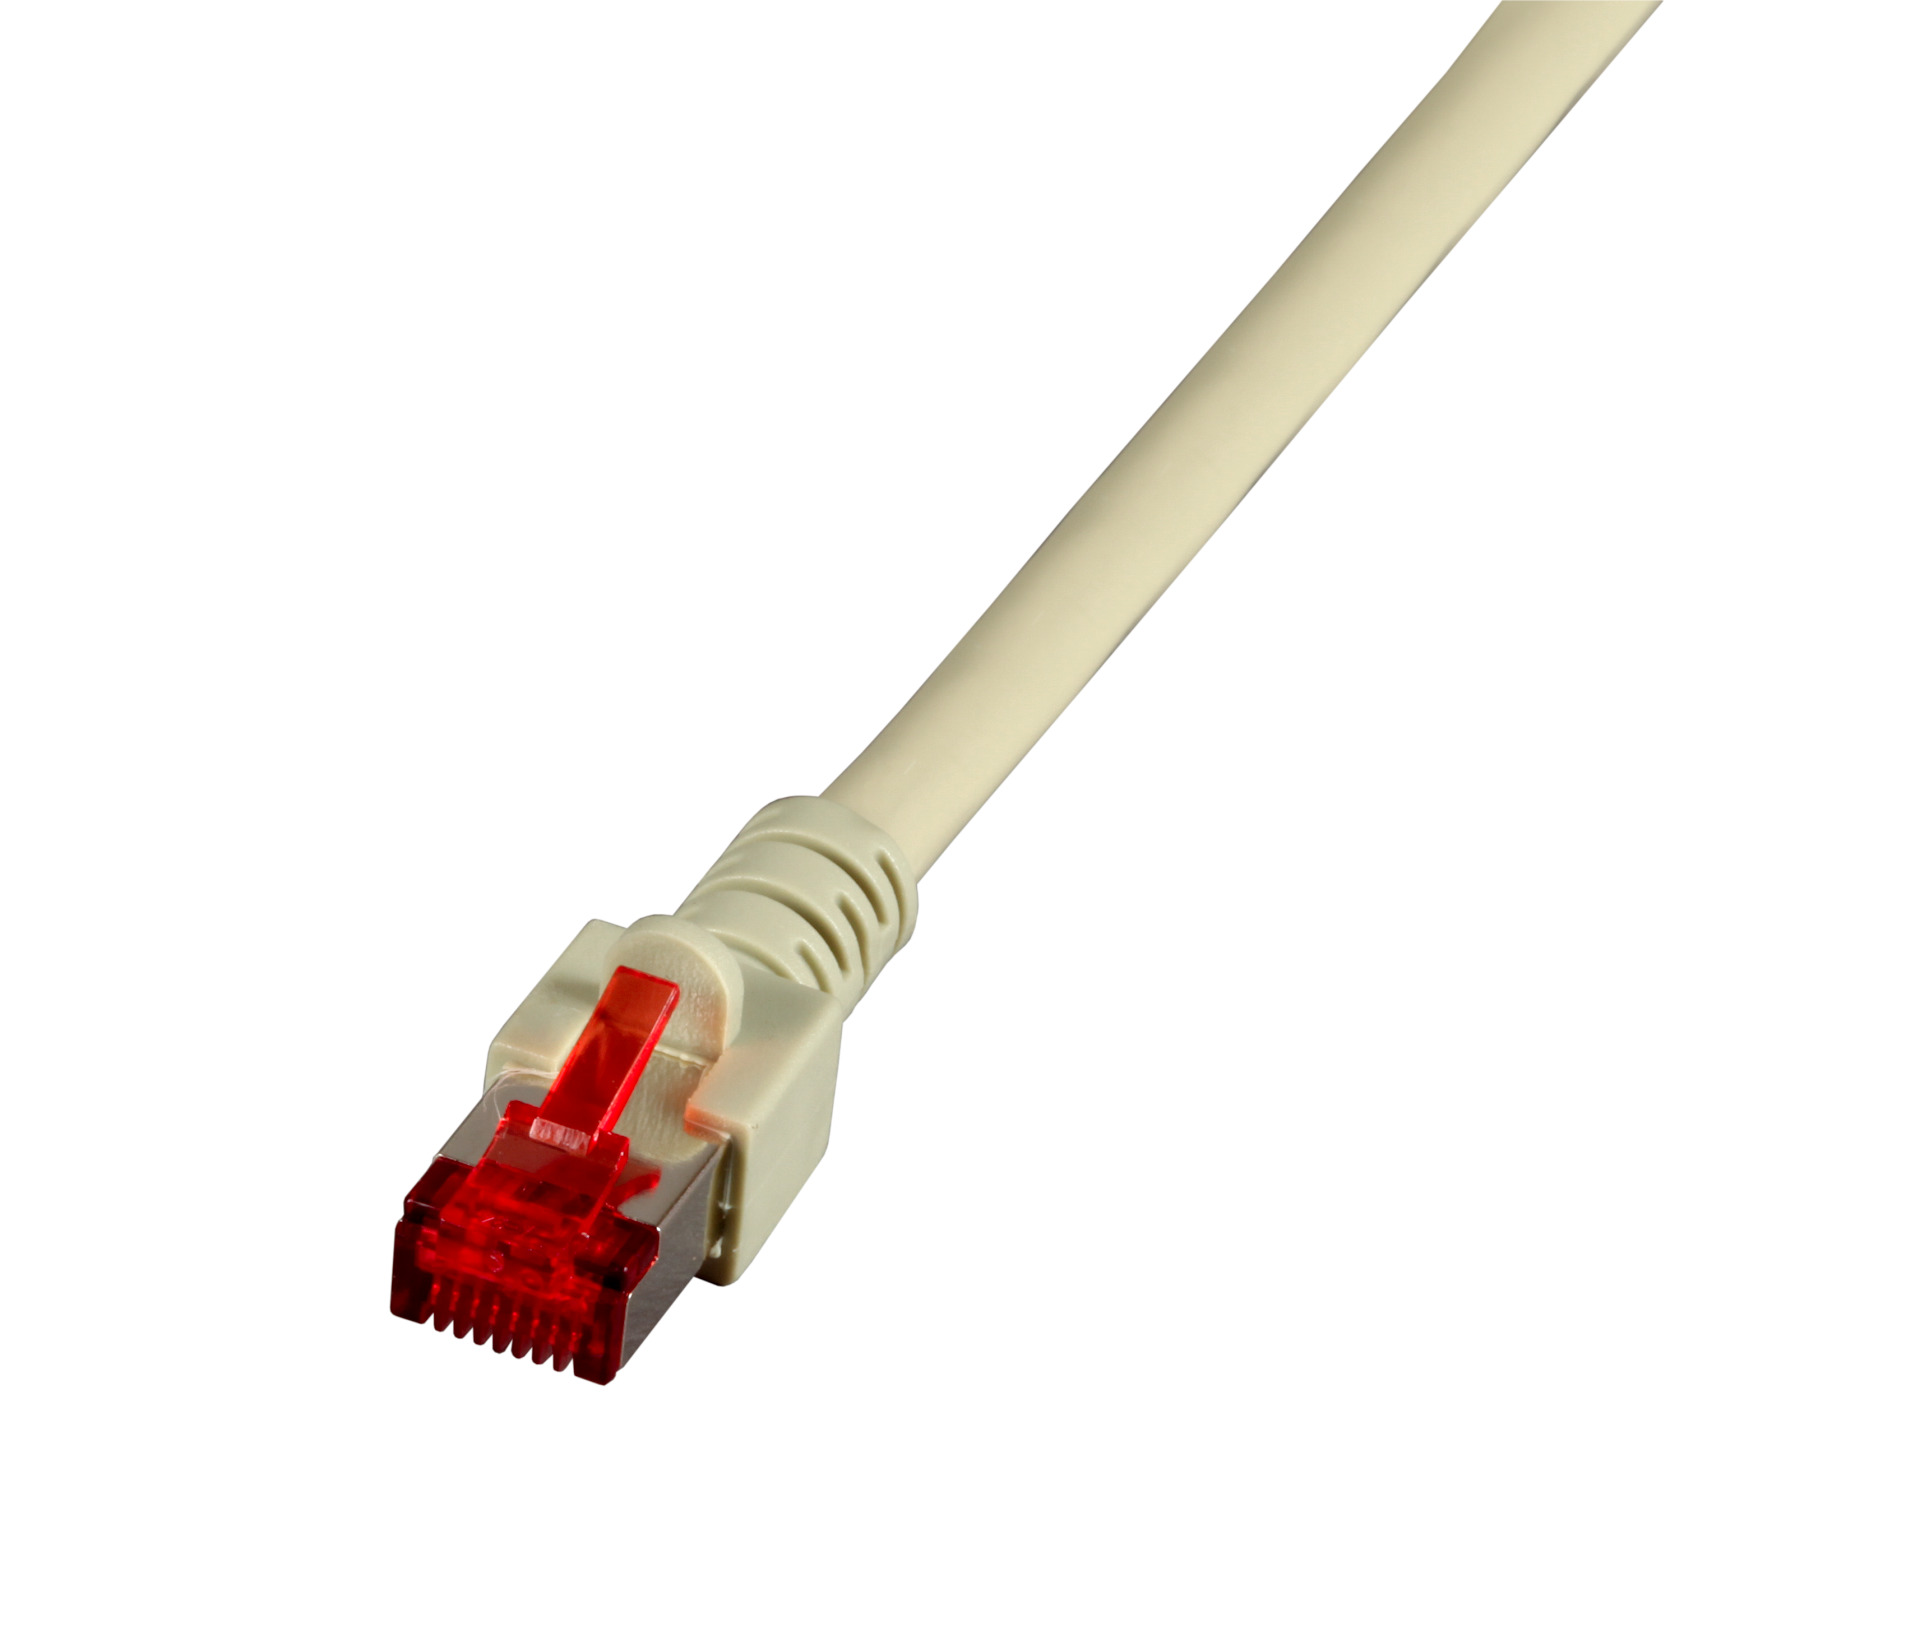 RJ45 Patch cable S/FTP, Cat.6, LSZH, 0.15m, grey